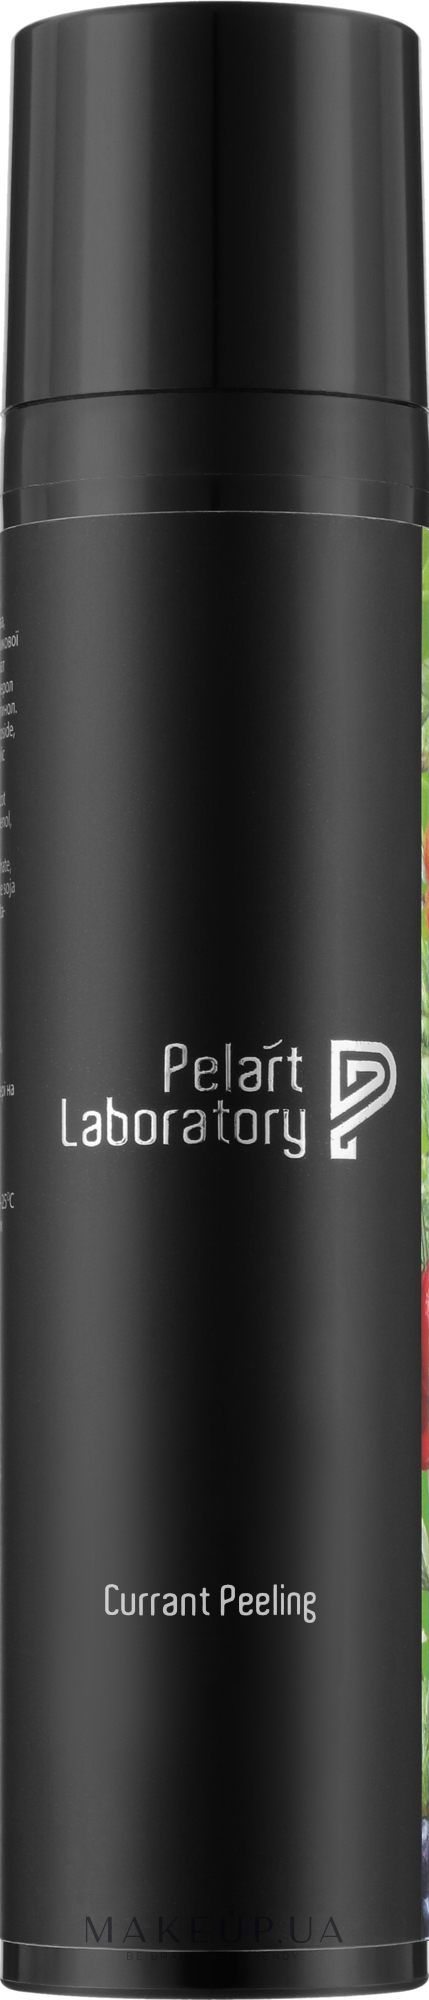 Пілінг смородиновий для обличчя - Pelart Laboratory Currant Peeling — фото 100ml